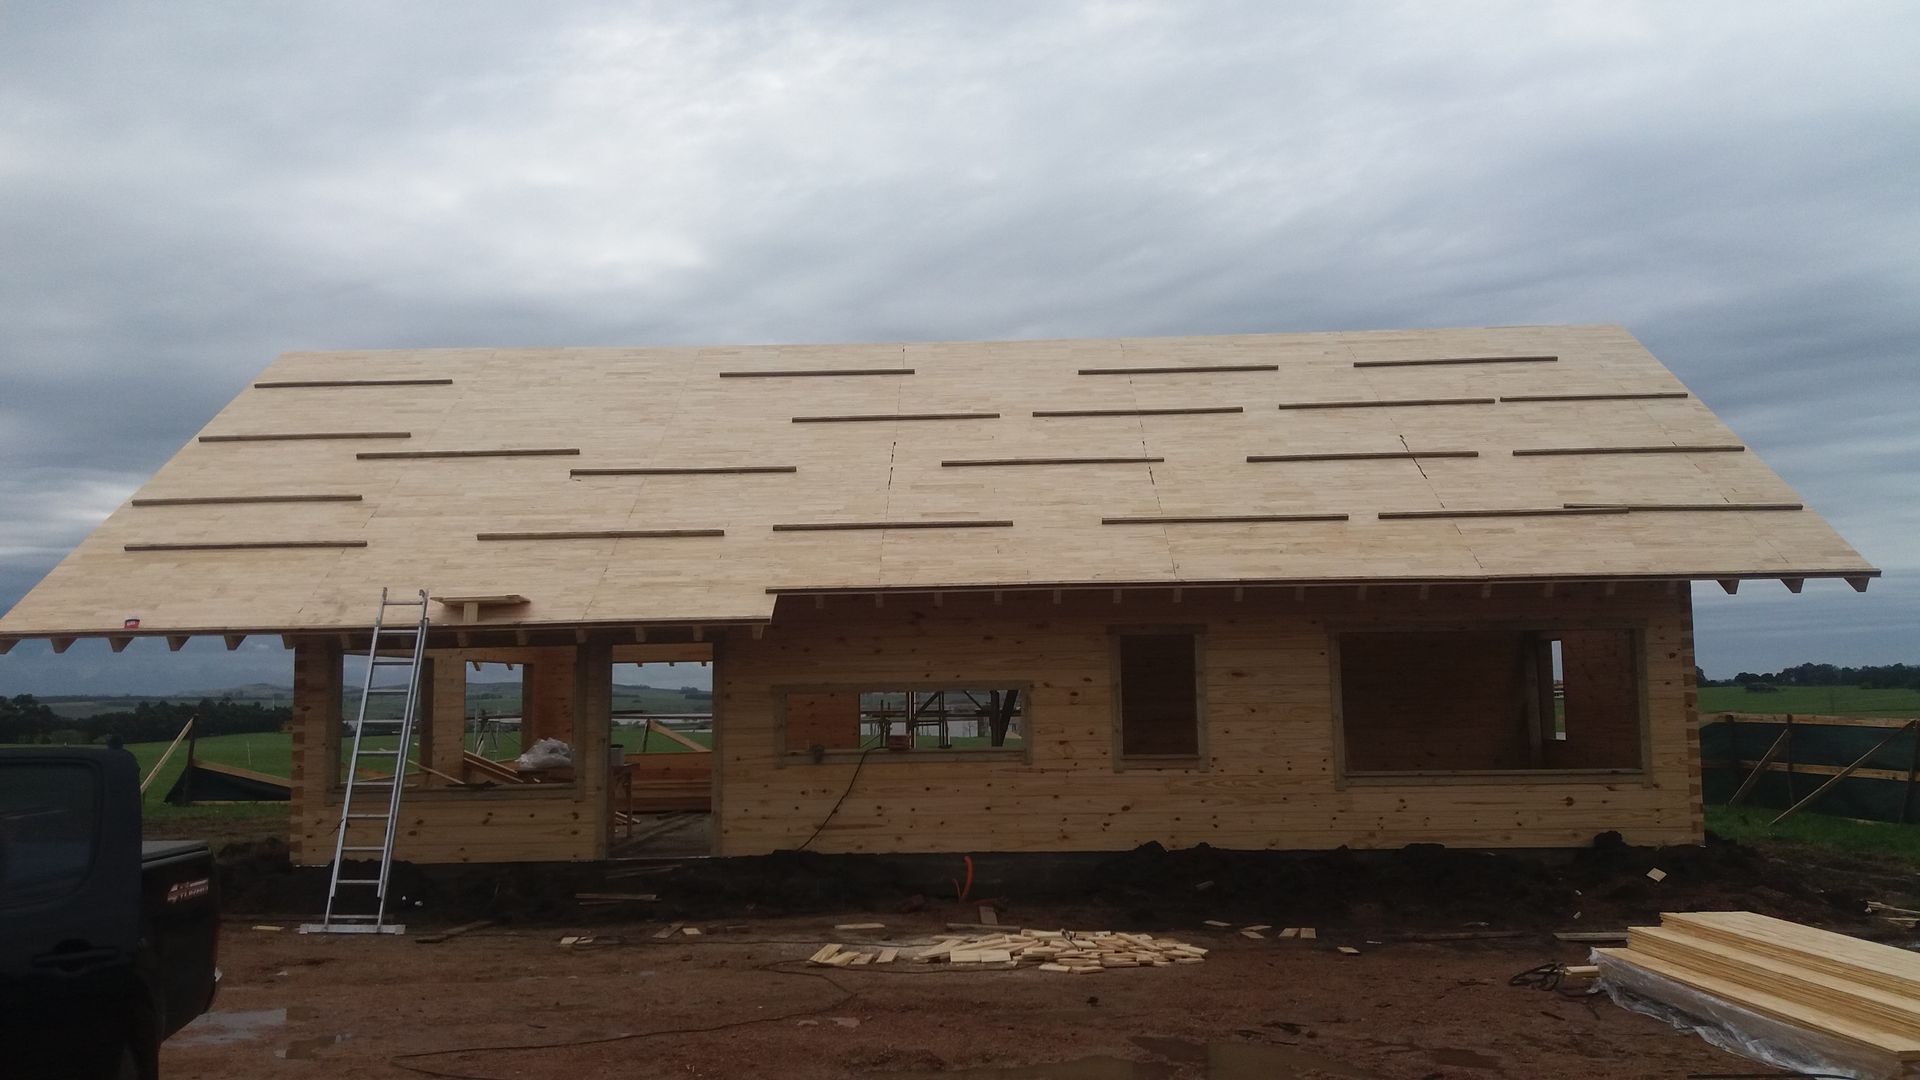 Casa en Uruguay (Construcción en 15 días) Superficie cubierta de 130 m2, Patagonia Log Homes - Arquitectos - Neuquén Patagonia Log Homes - Arquitectos - Neuquén Wooden houses Engineered Wood Transparent